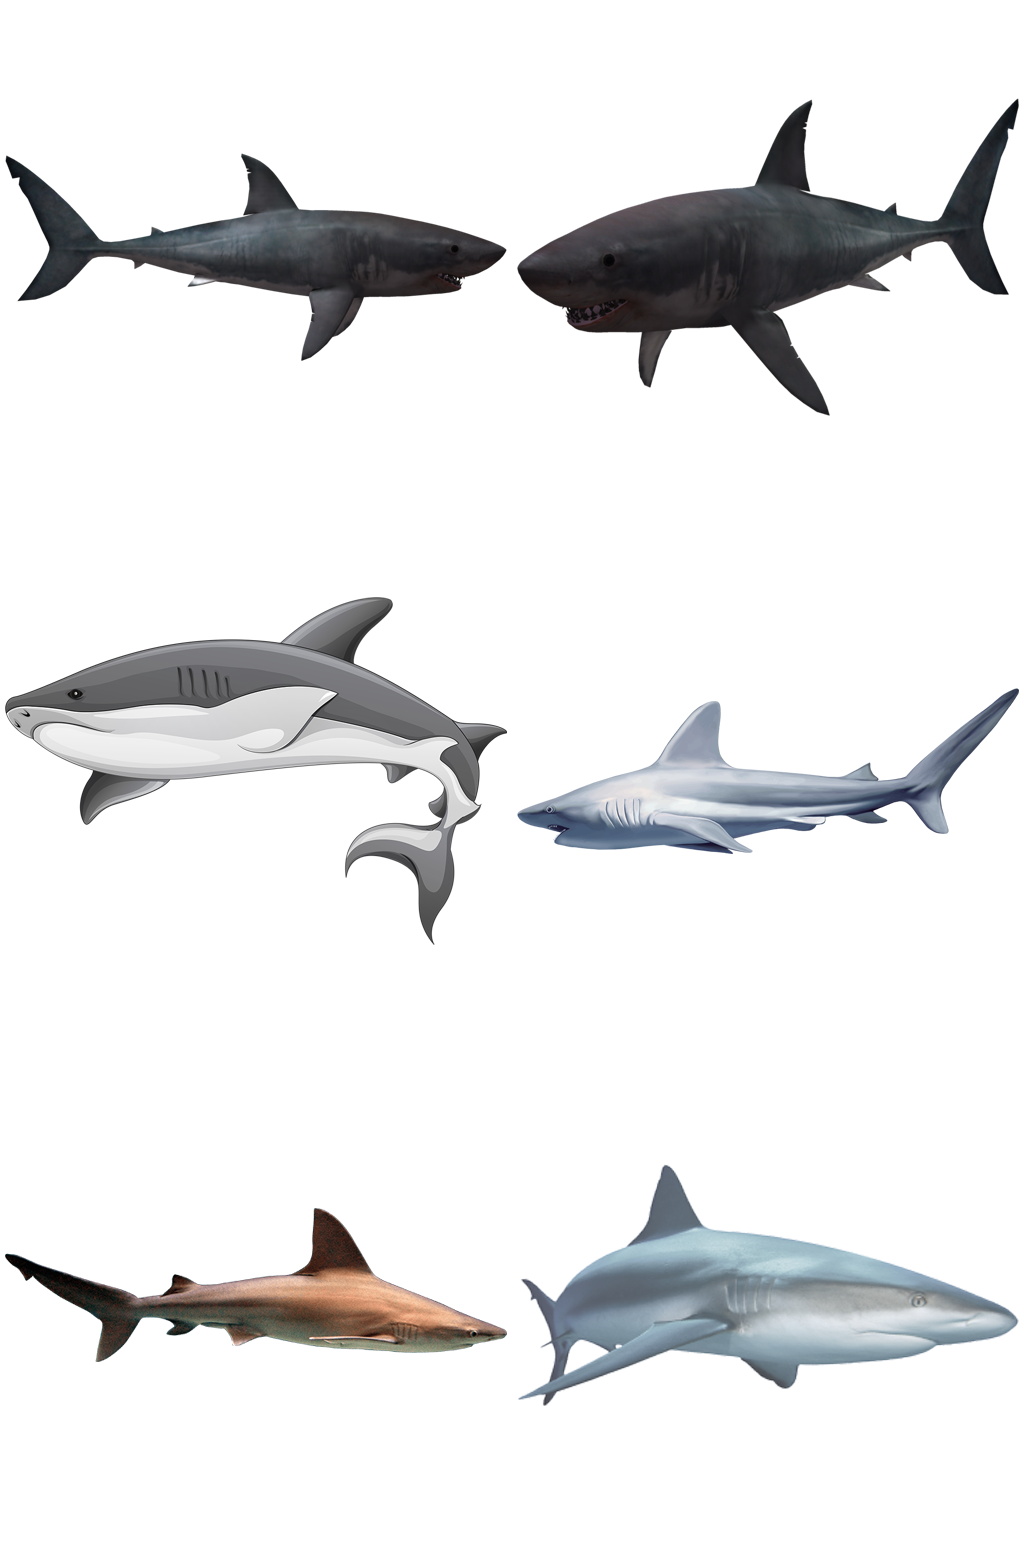 彩色精美动物鲨鱼创意设计元素素材